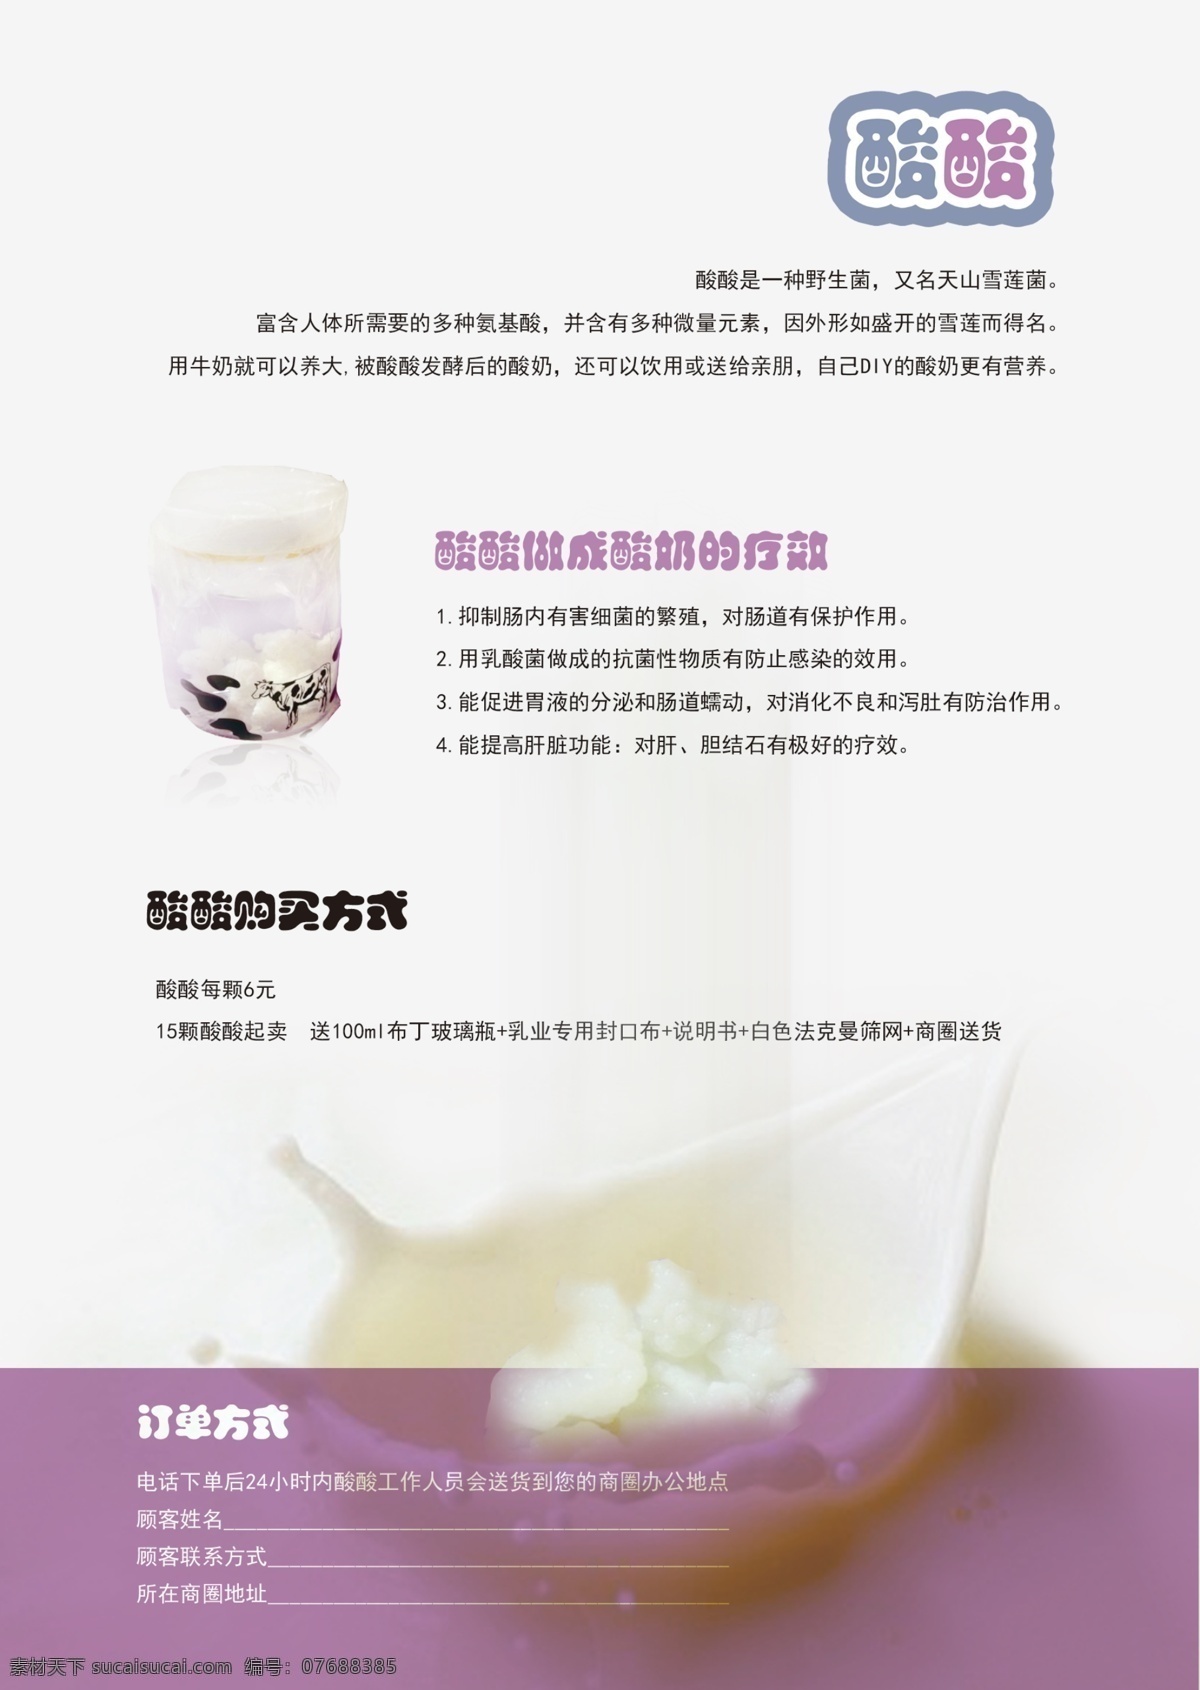 酸酸 乳酸菌 发酵 模板下载 牛奶 广告设计模板 源文件 白色